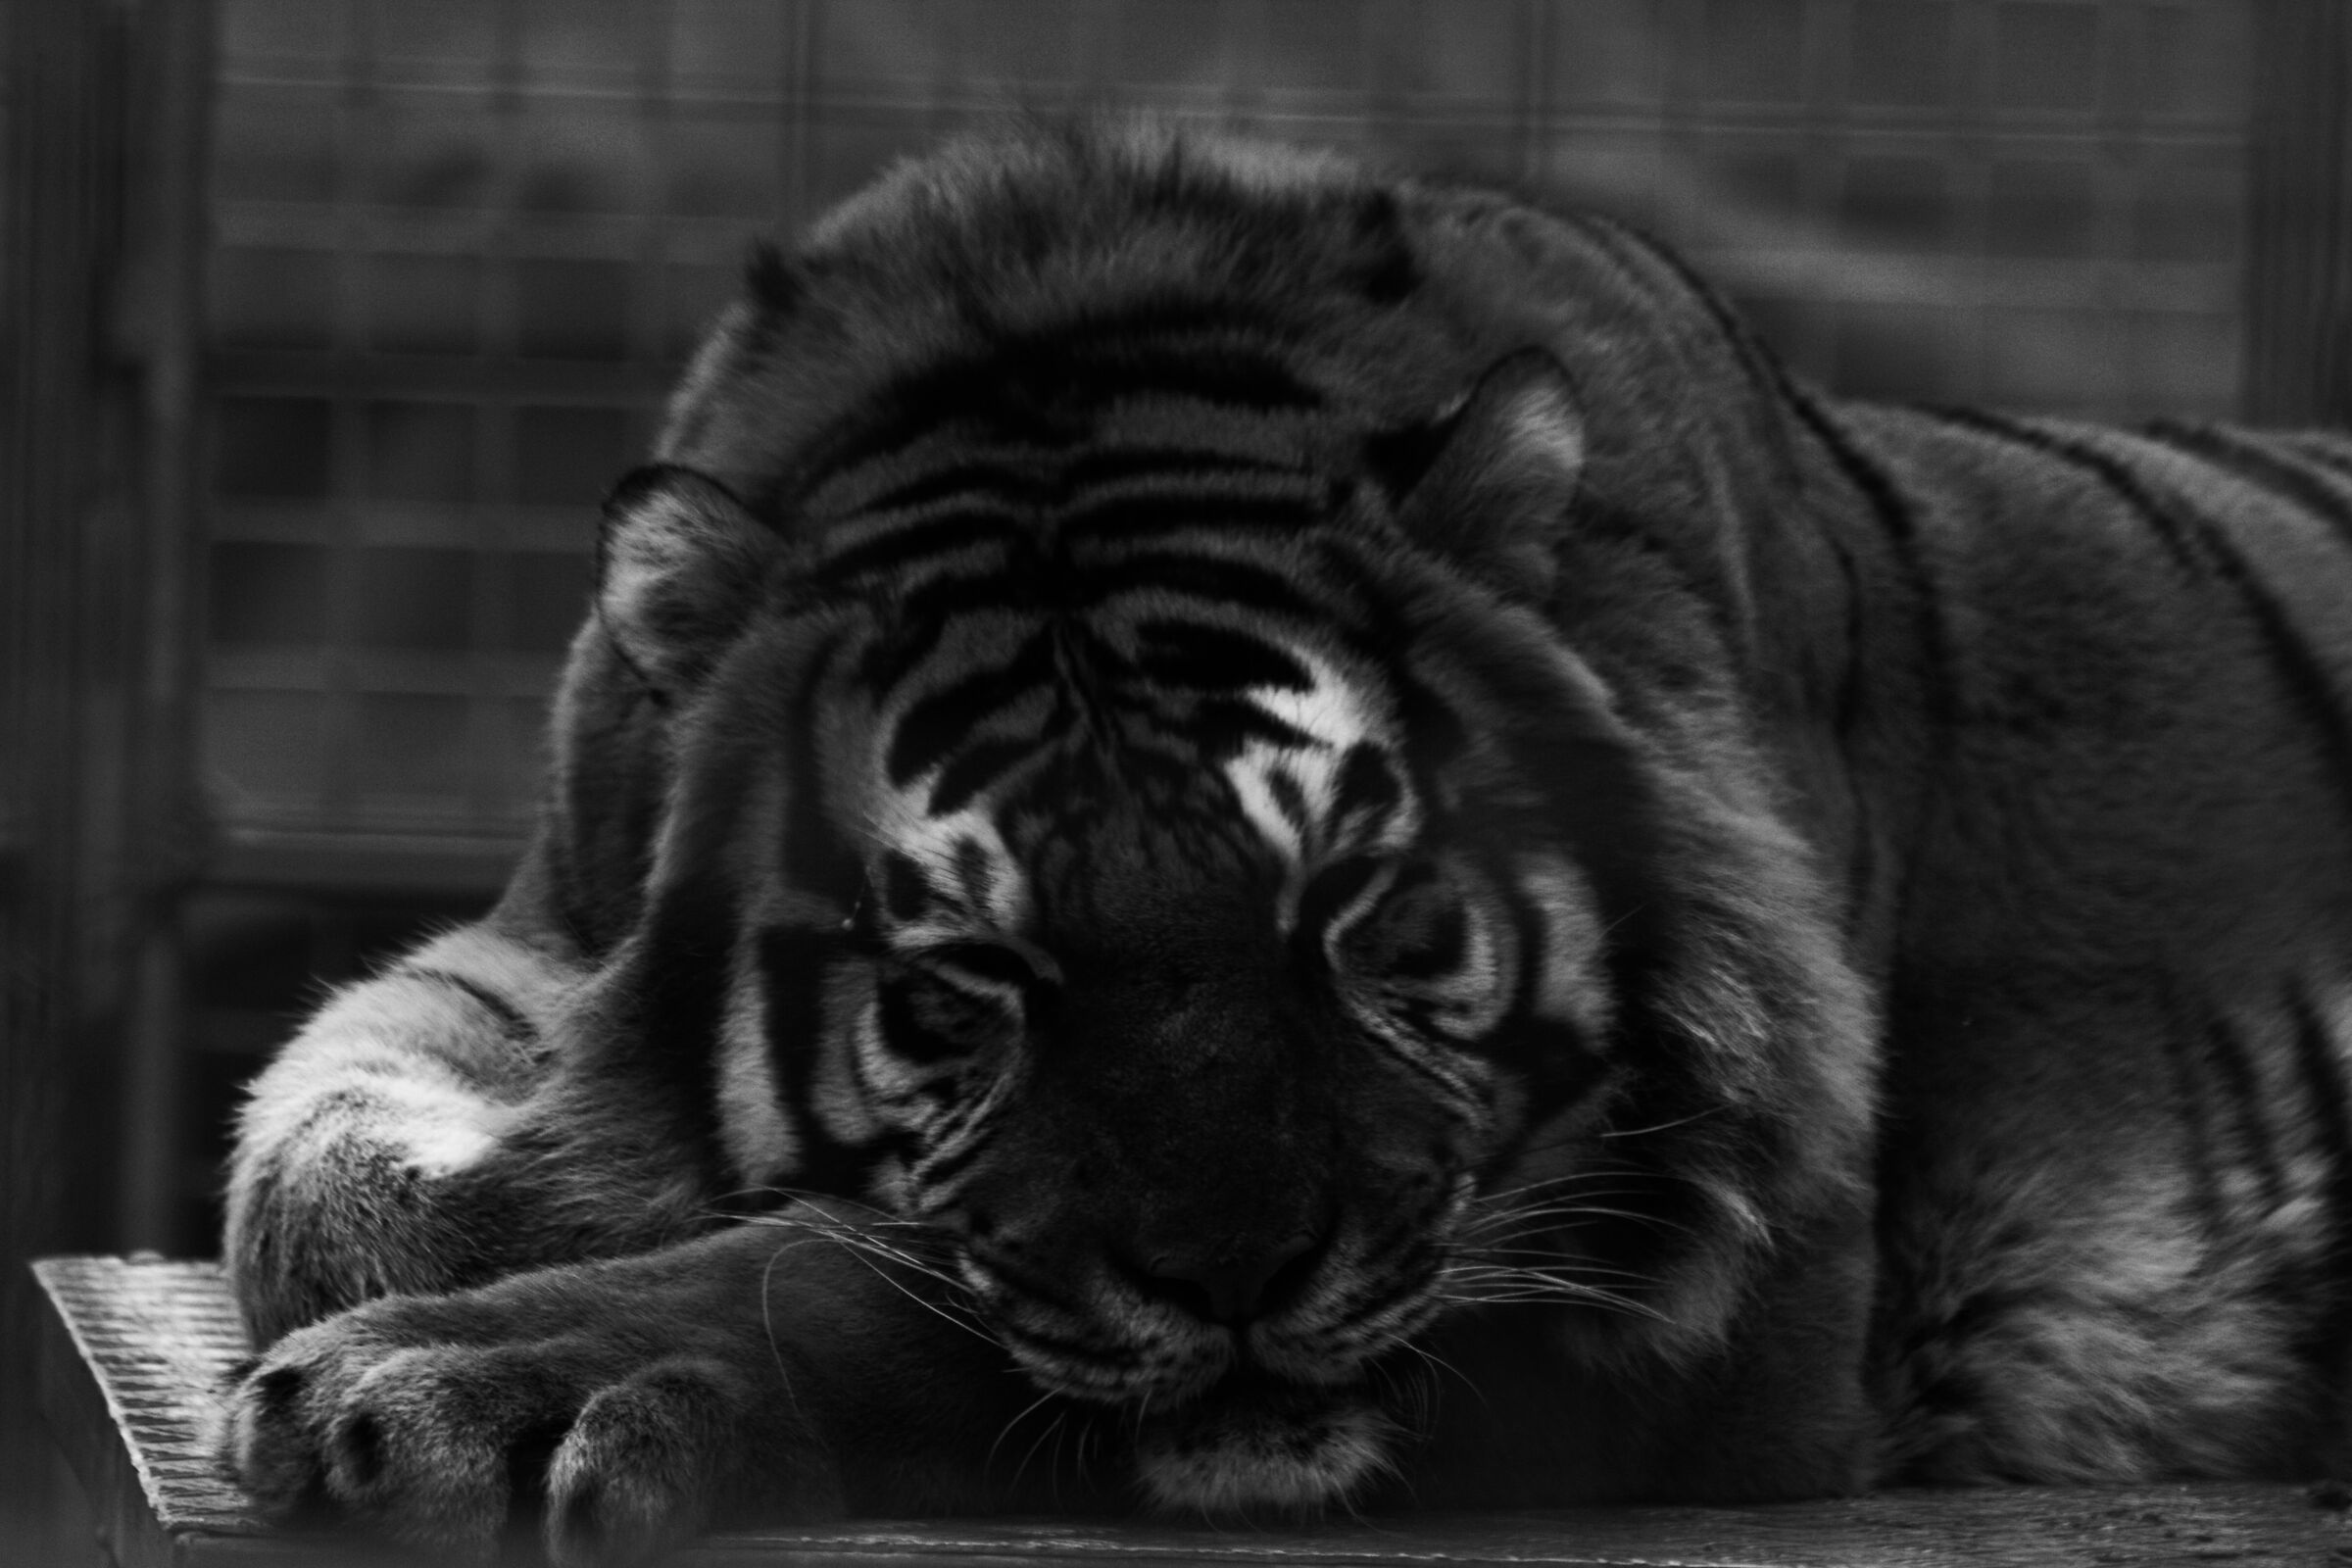 Panthera tigris...